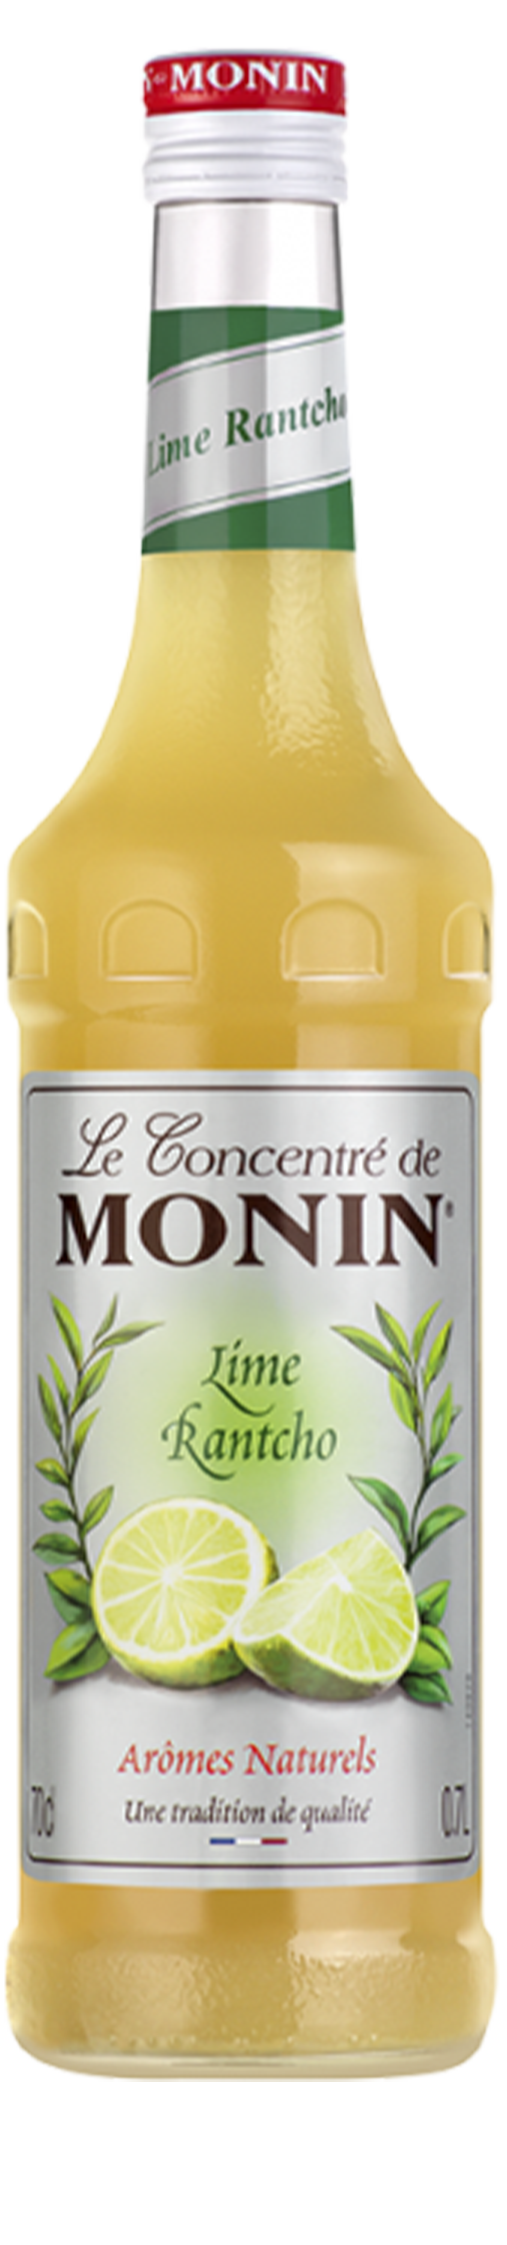 Le Sirop de MONIN Lime rantcho 0.7L